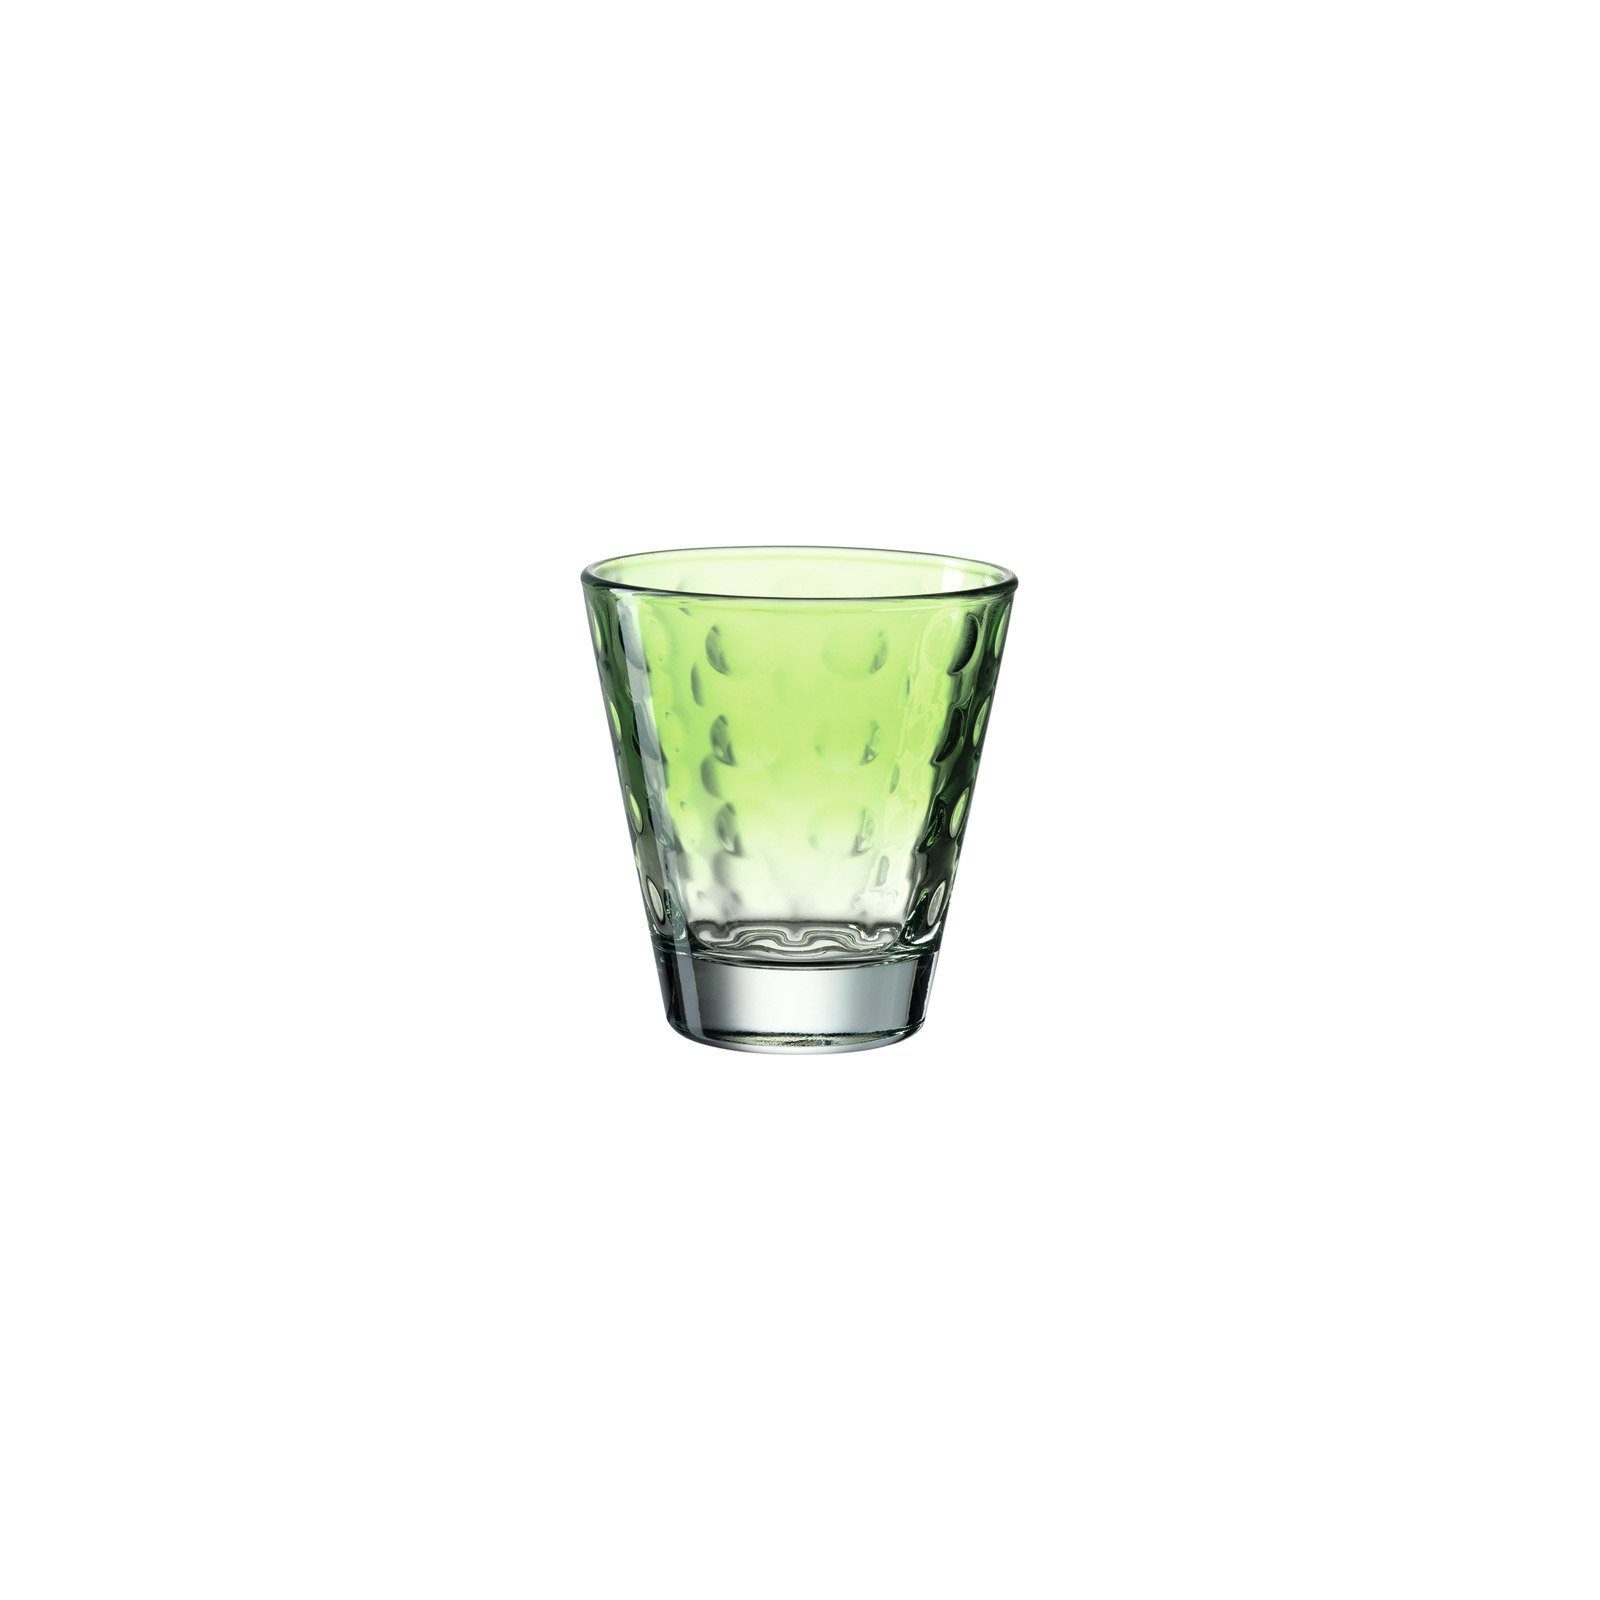 215 LEONARDO Glas ml 6er Glas grün Optic Set, Trinkgläser